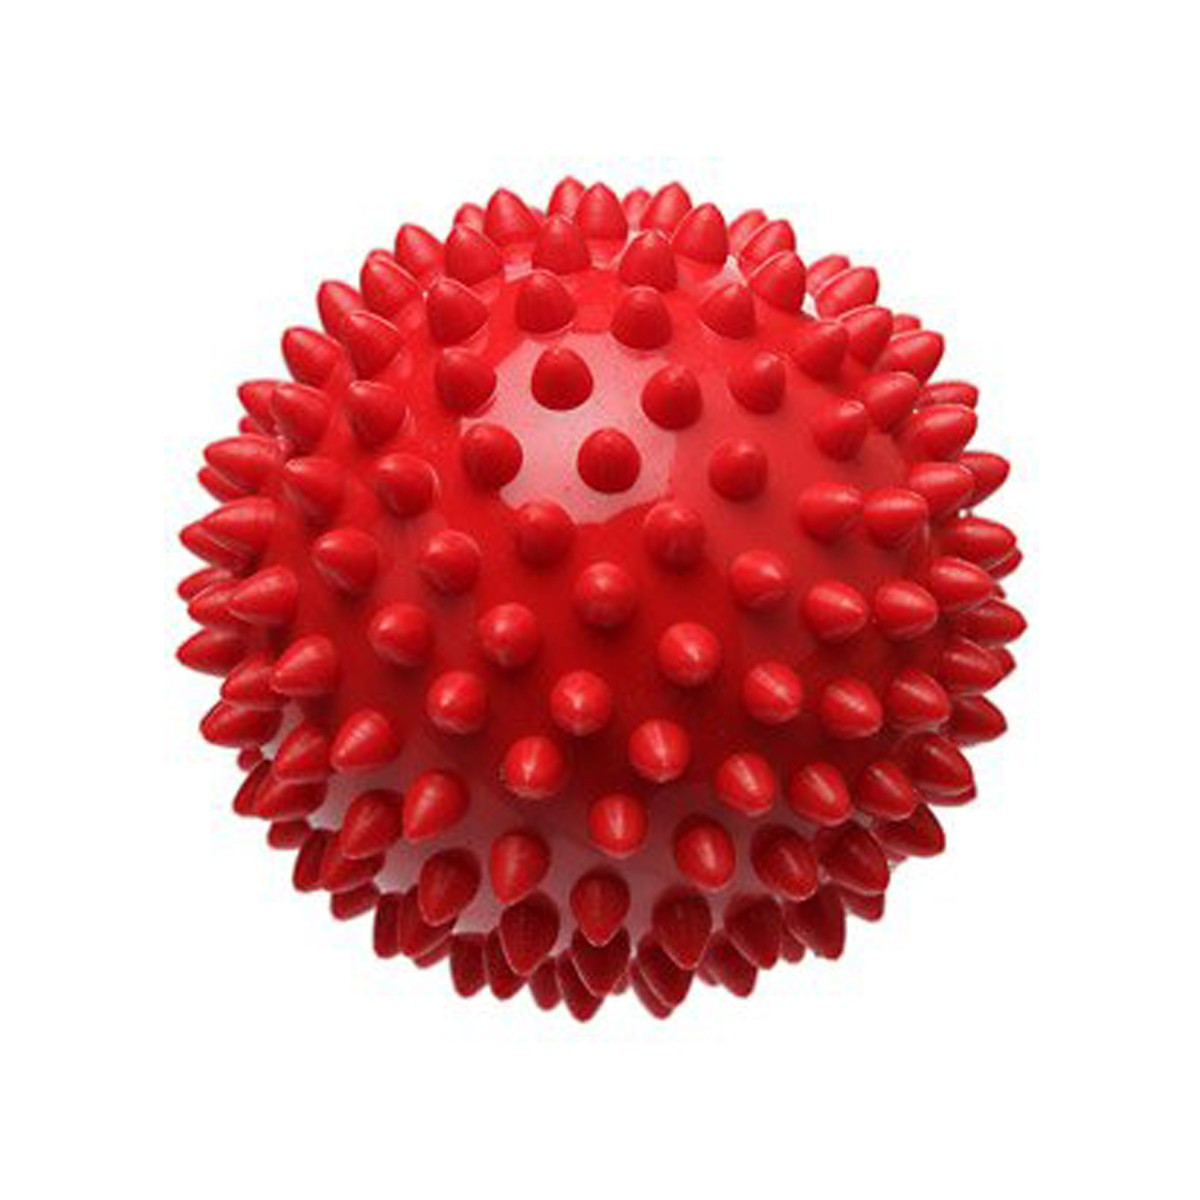 Массажный мяч для стоп. Массажер 5207 шар массажный с шипами. Мяч массажный Крейт мм5. Массажный мяч Togu Spiky massage Ball. Мяч массажный rh107.